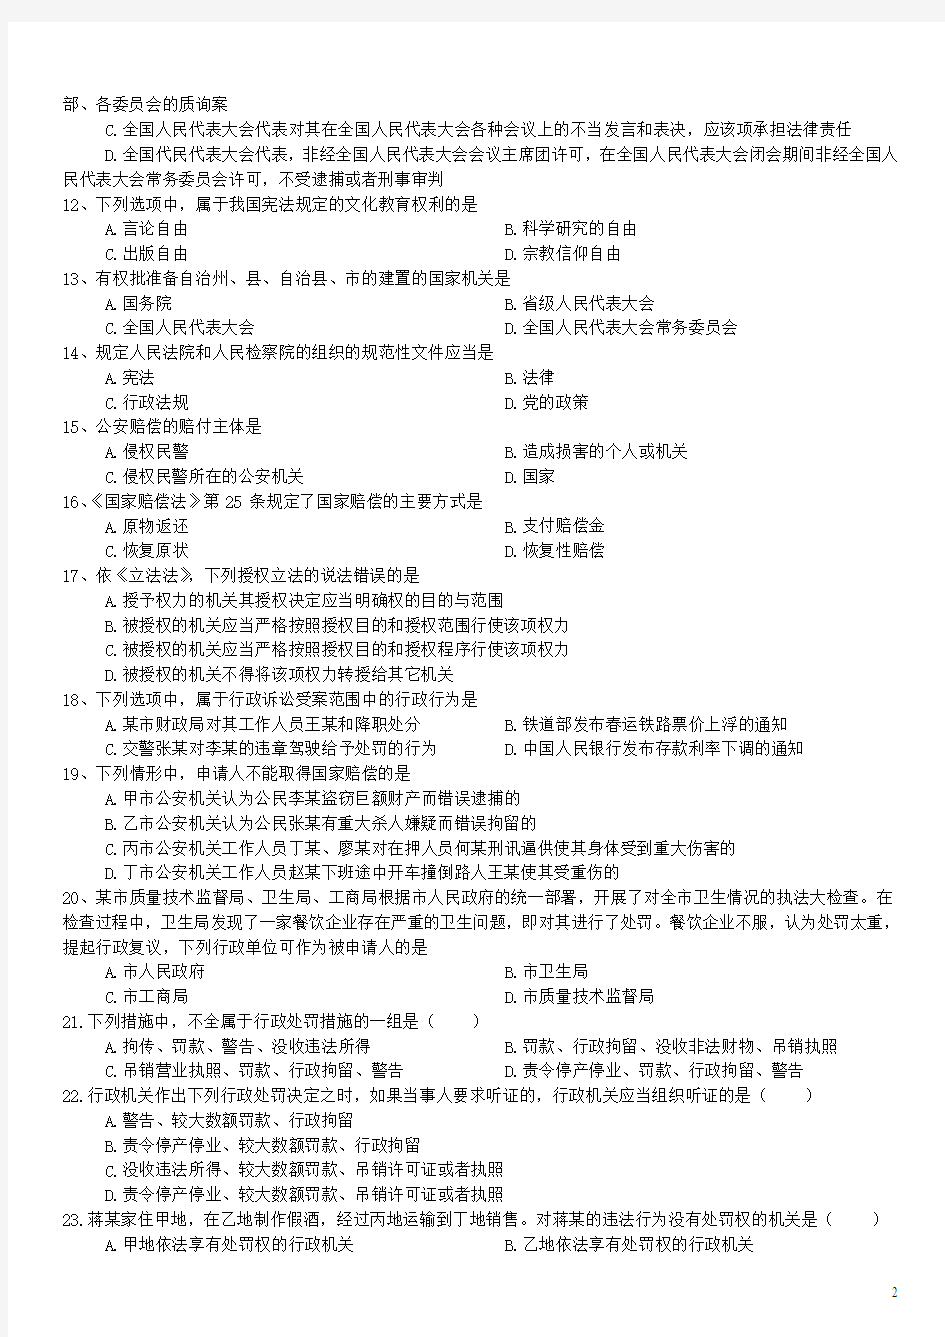 2013年江西省人民警察录用考试《公安基础知识》真题及详解-B